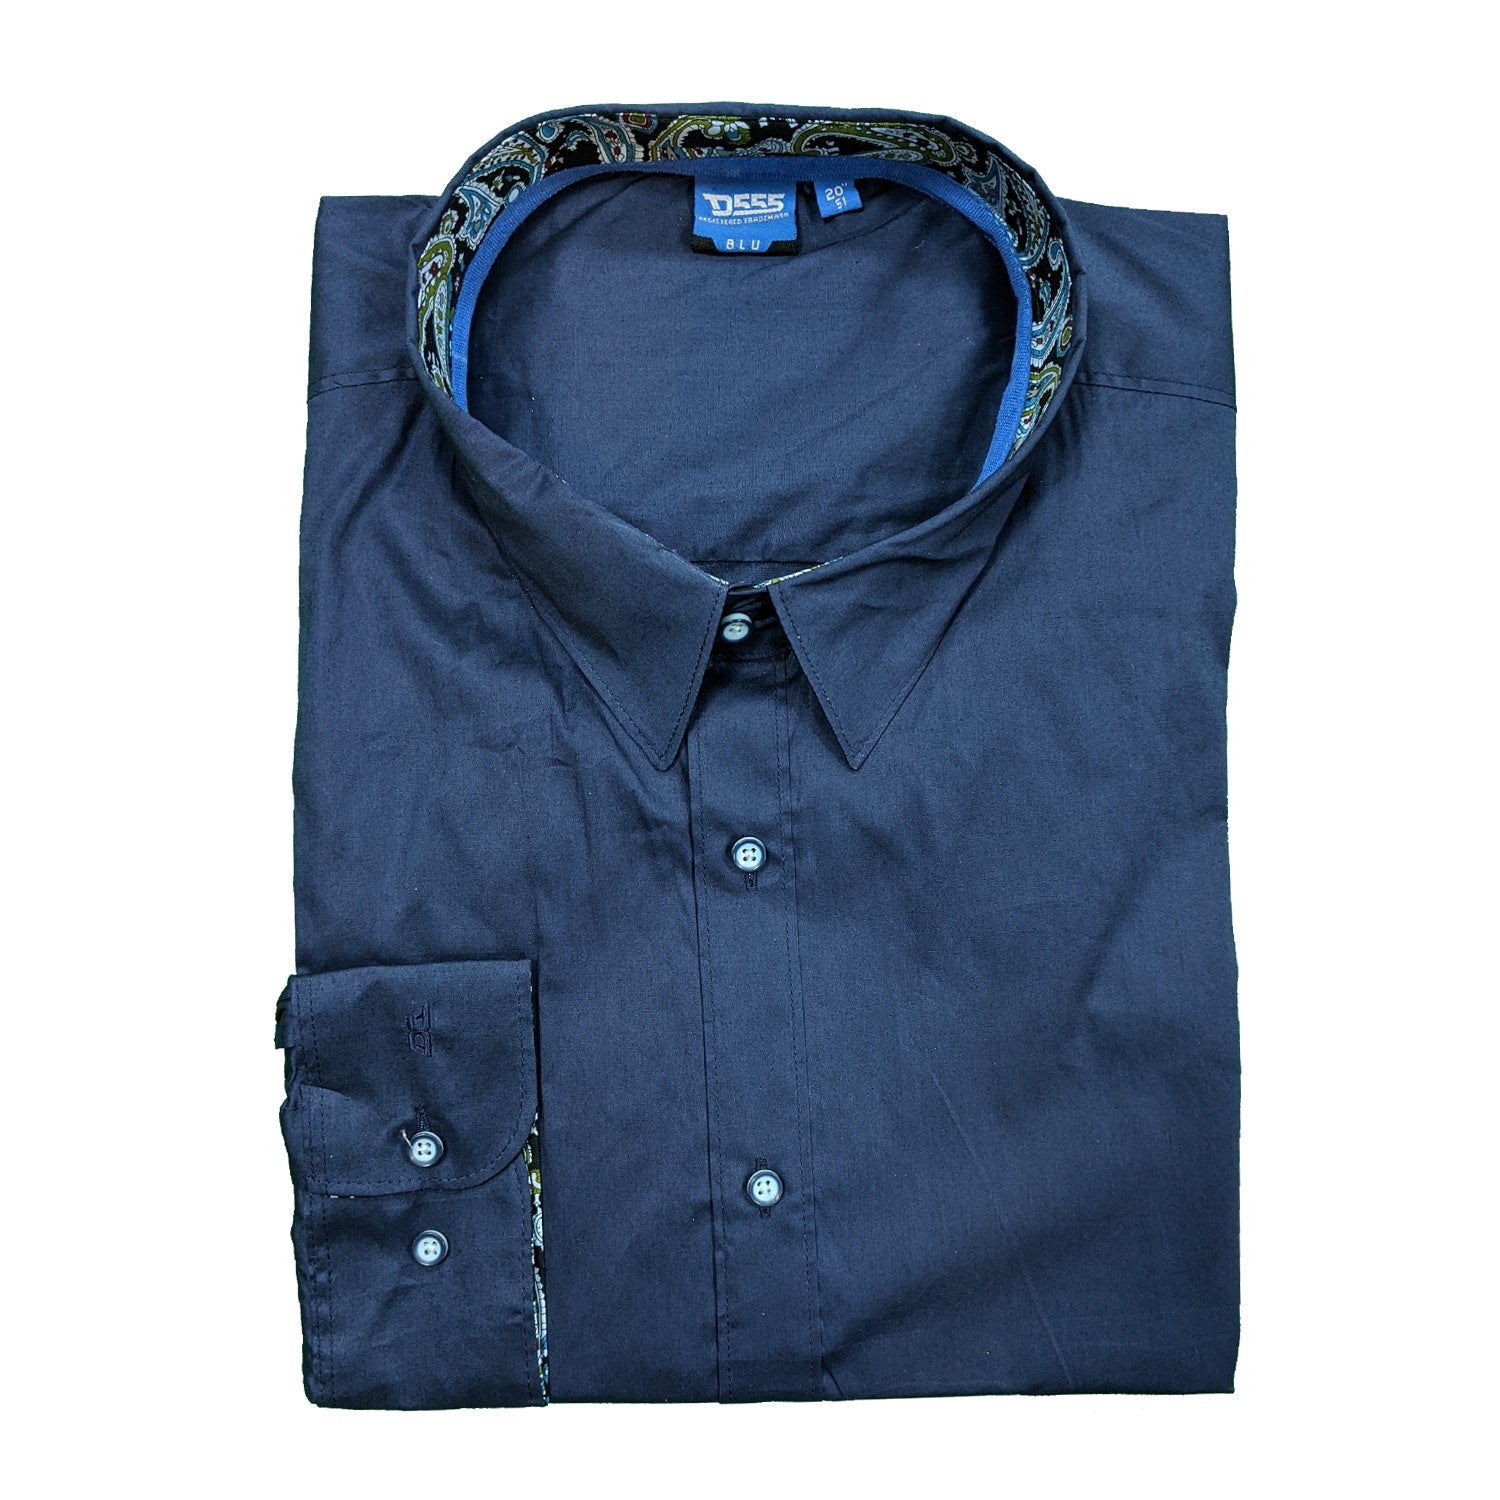 D555 L/S Shirt - KS11531 - Libre - Orient Blue 1